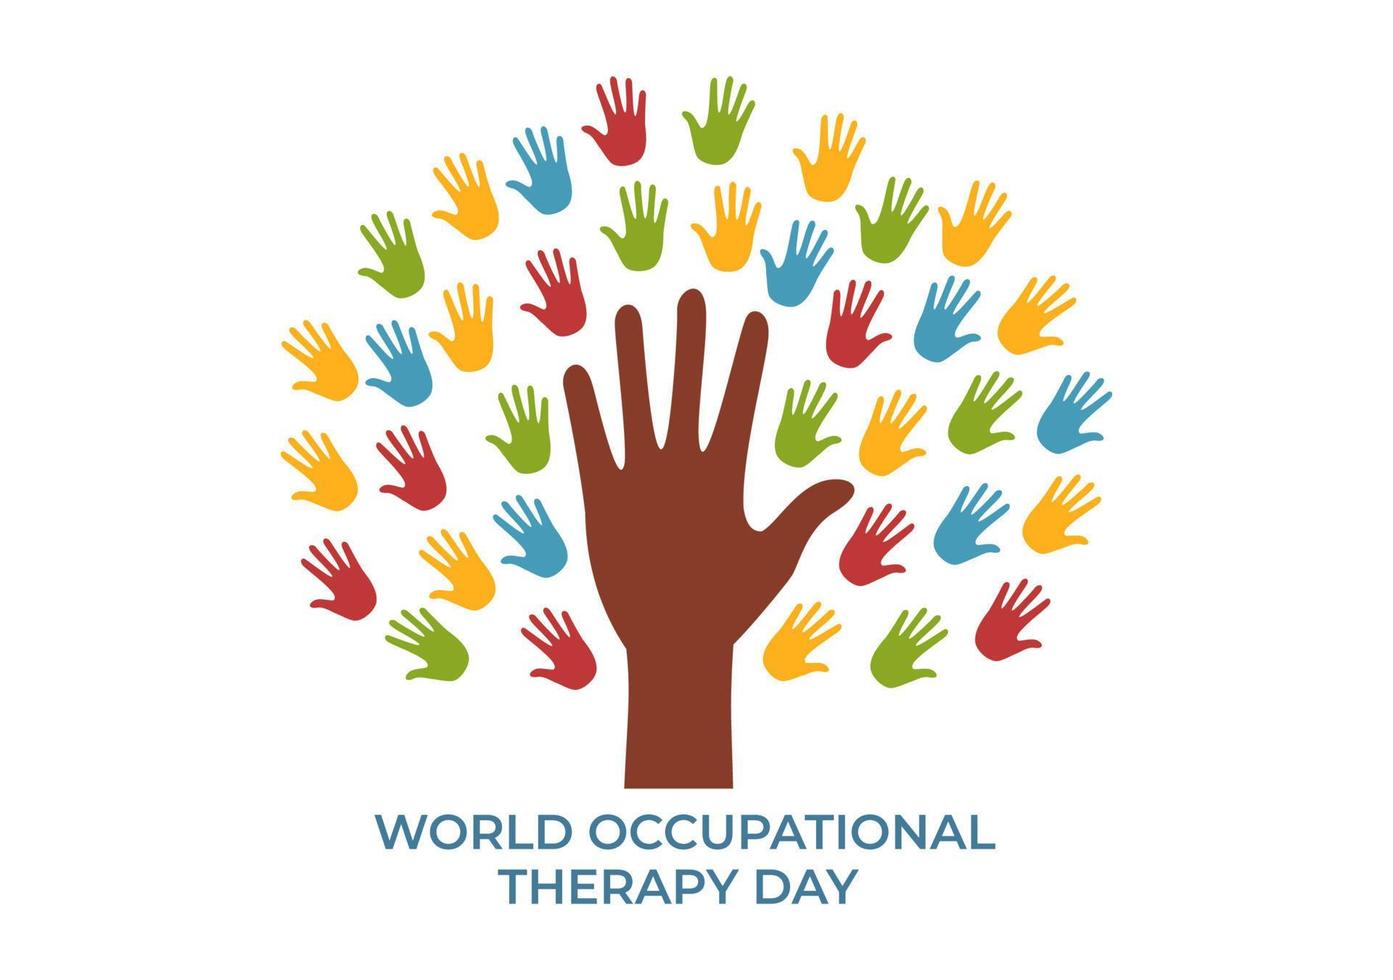 celebración del día mundial de la terapia ocupacional ilustración plana de dibujos animados dibujados a mano con fisioterapeutas para mantener y recuperar la salud vector